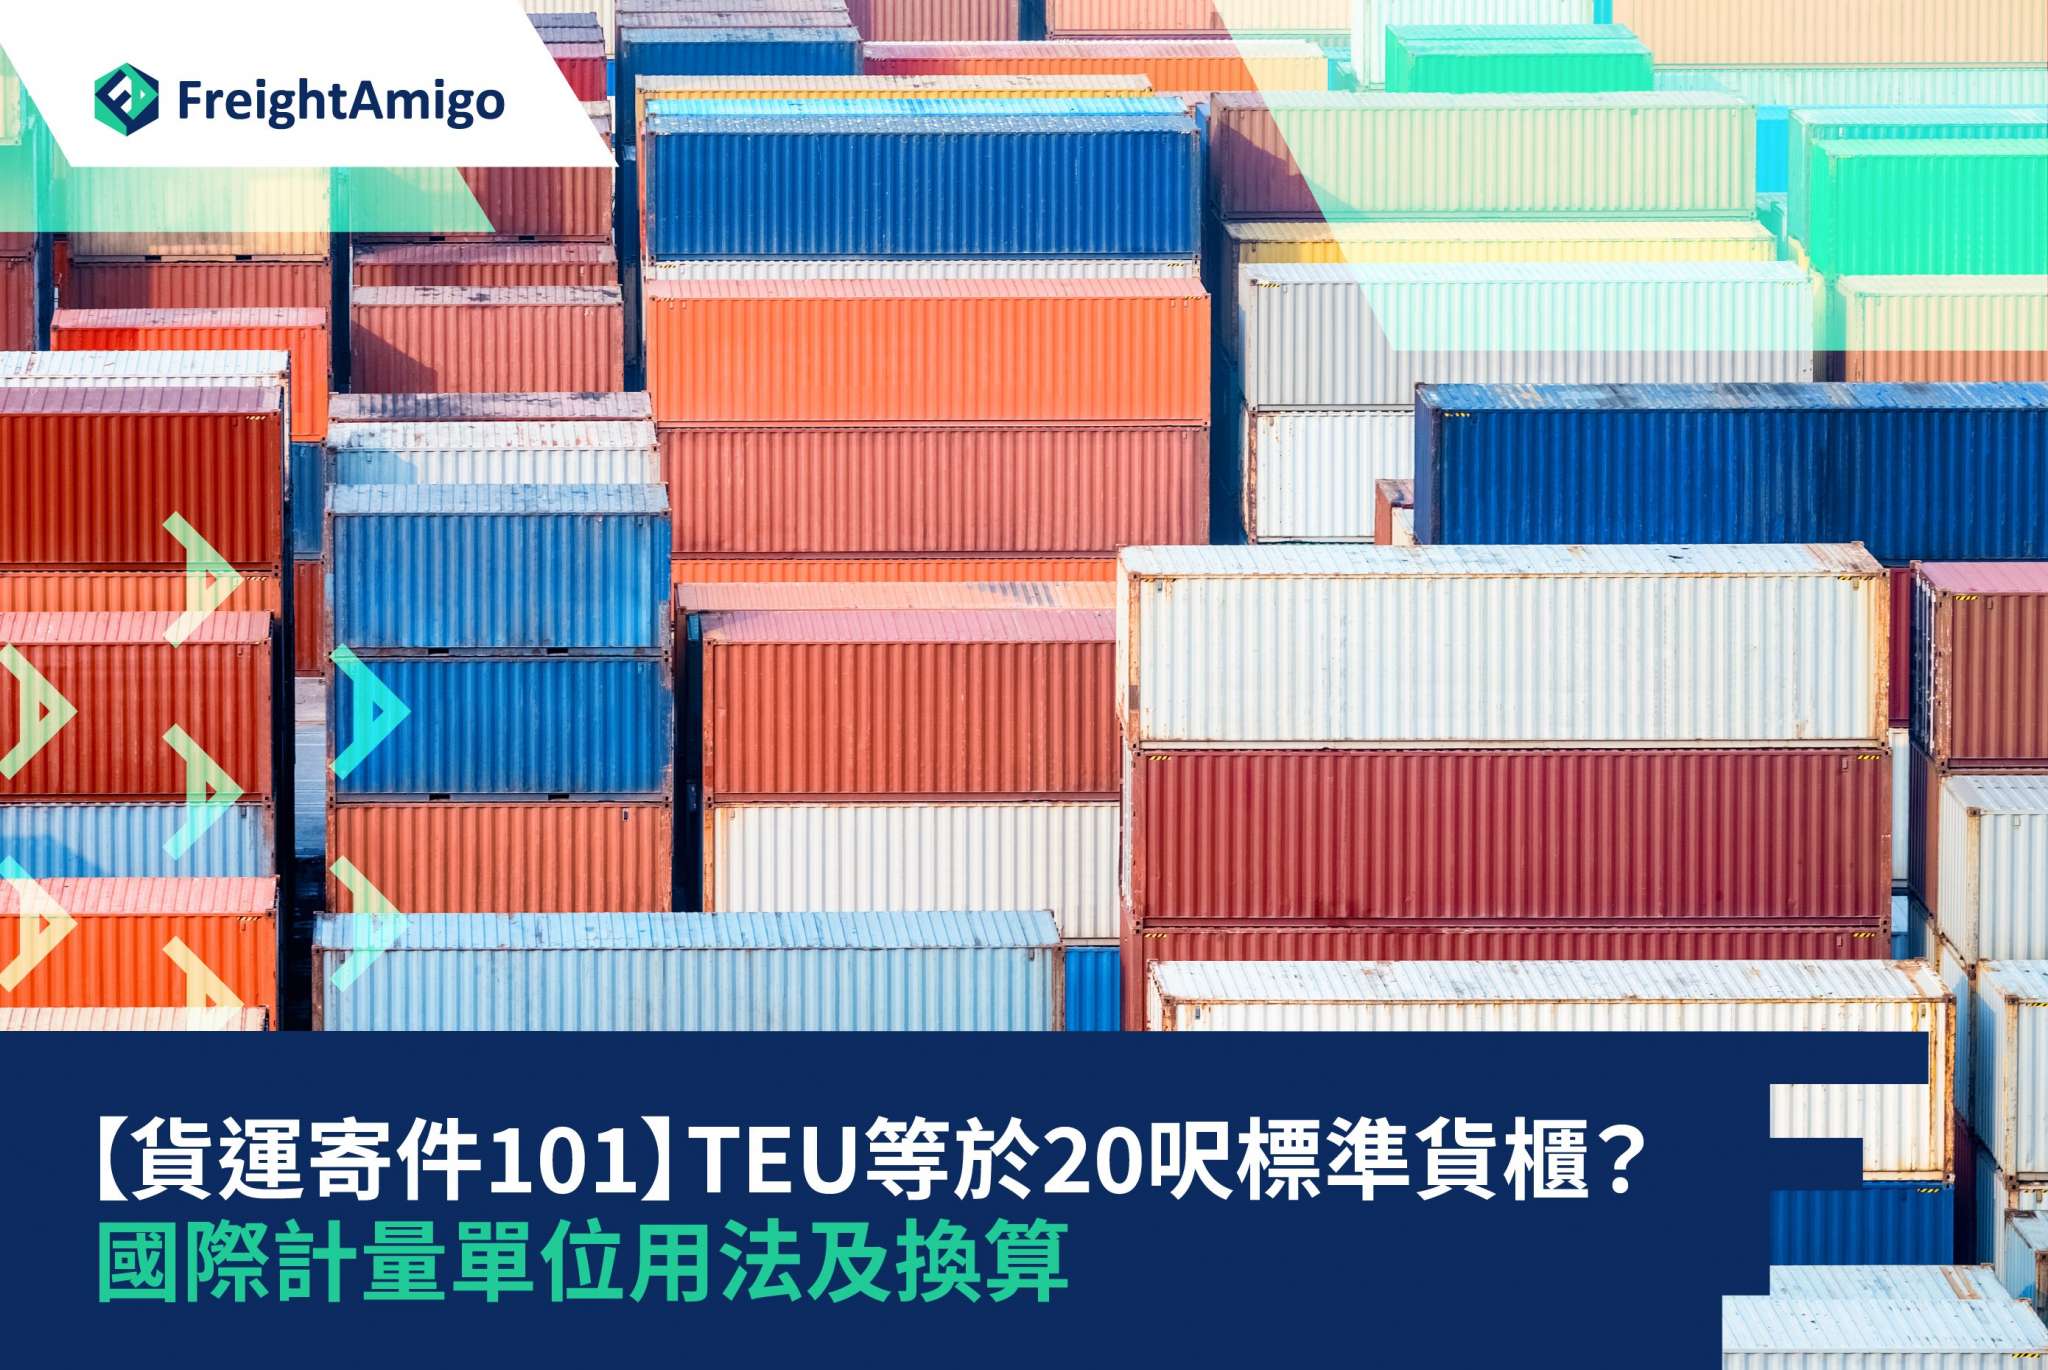 【貨運寄件101】TEU等於20呎標準貨櫃？ | 國際計量單位用法及換算